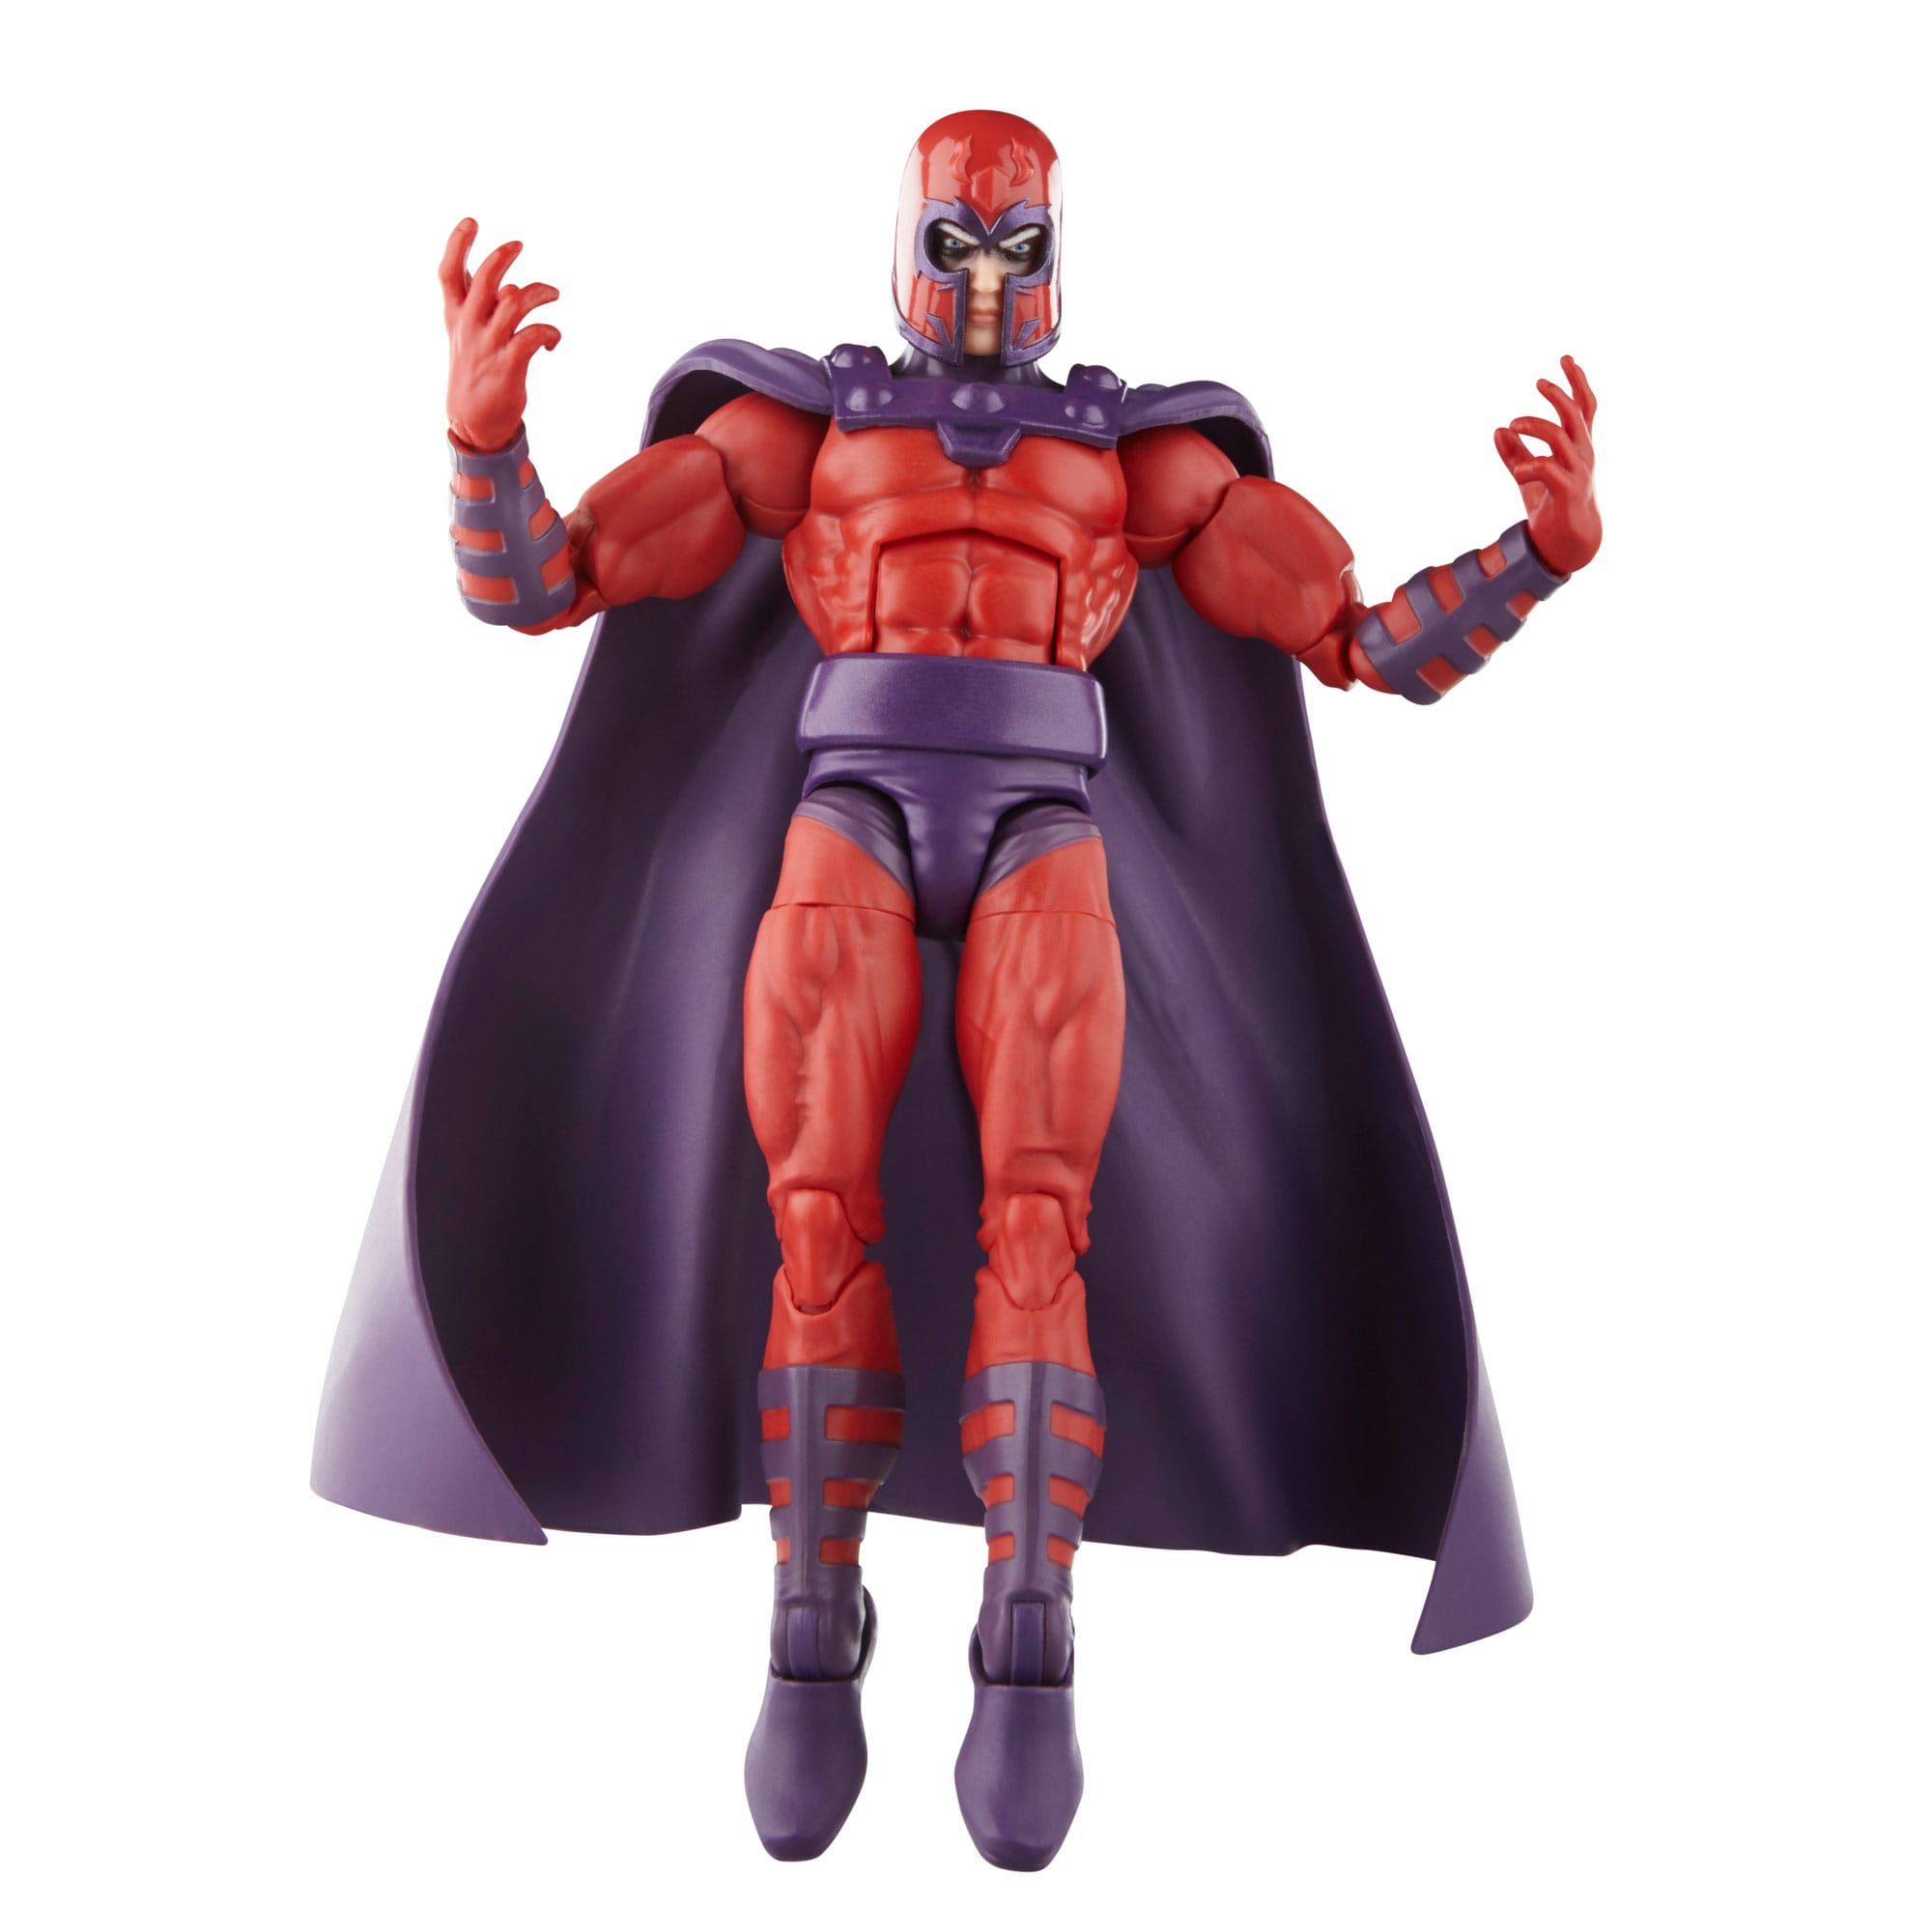 X-Men '97 Marvel Legends Actionfigur Magneto 15 cm  F65525X0 5010996143792